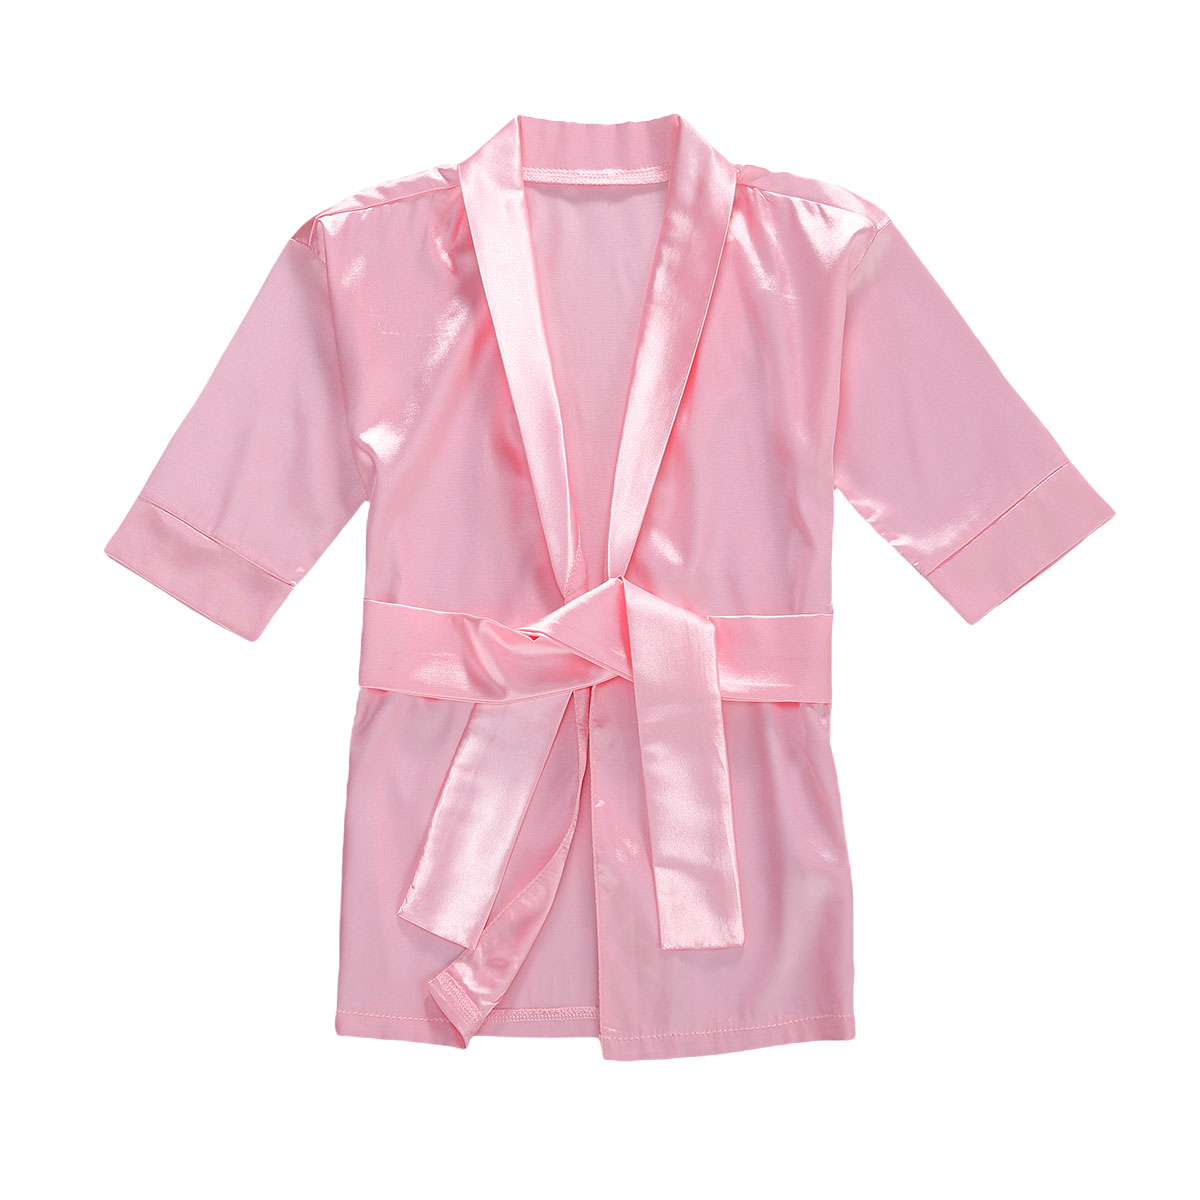 【通販激安】 女の子用長袖バスローブ 赤 ピンク ピンク 無地のシルク サテンの着物 6ヶ月から6歳までの女の子用 着物・浴衣